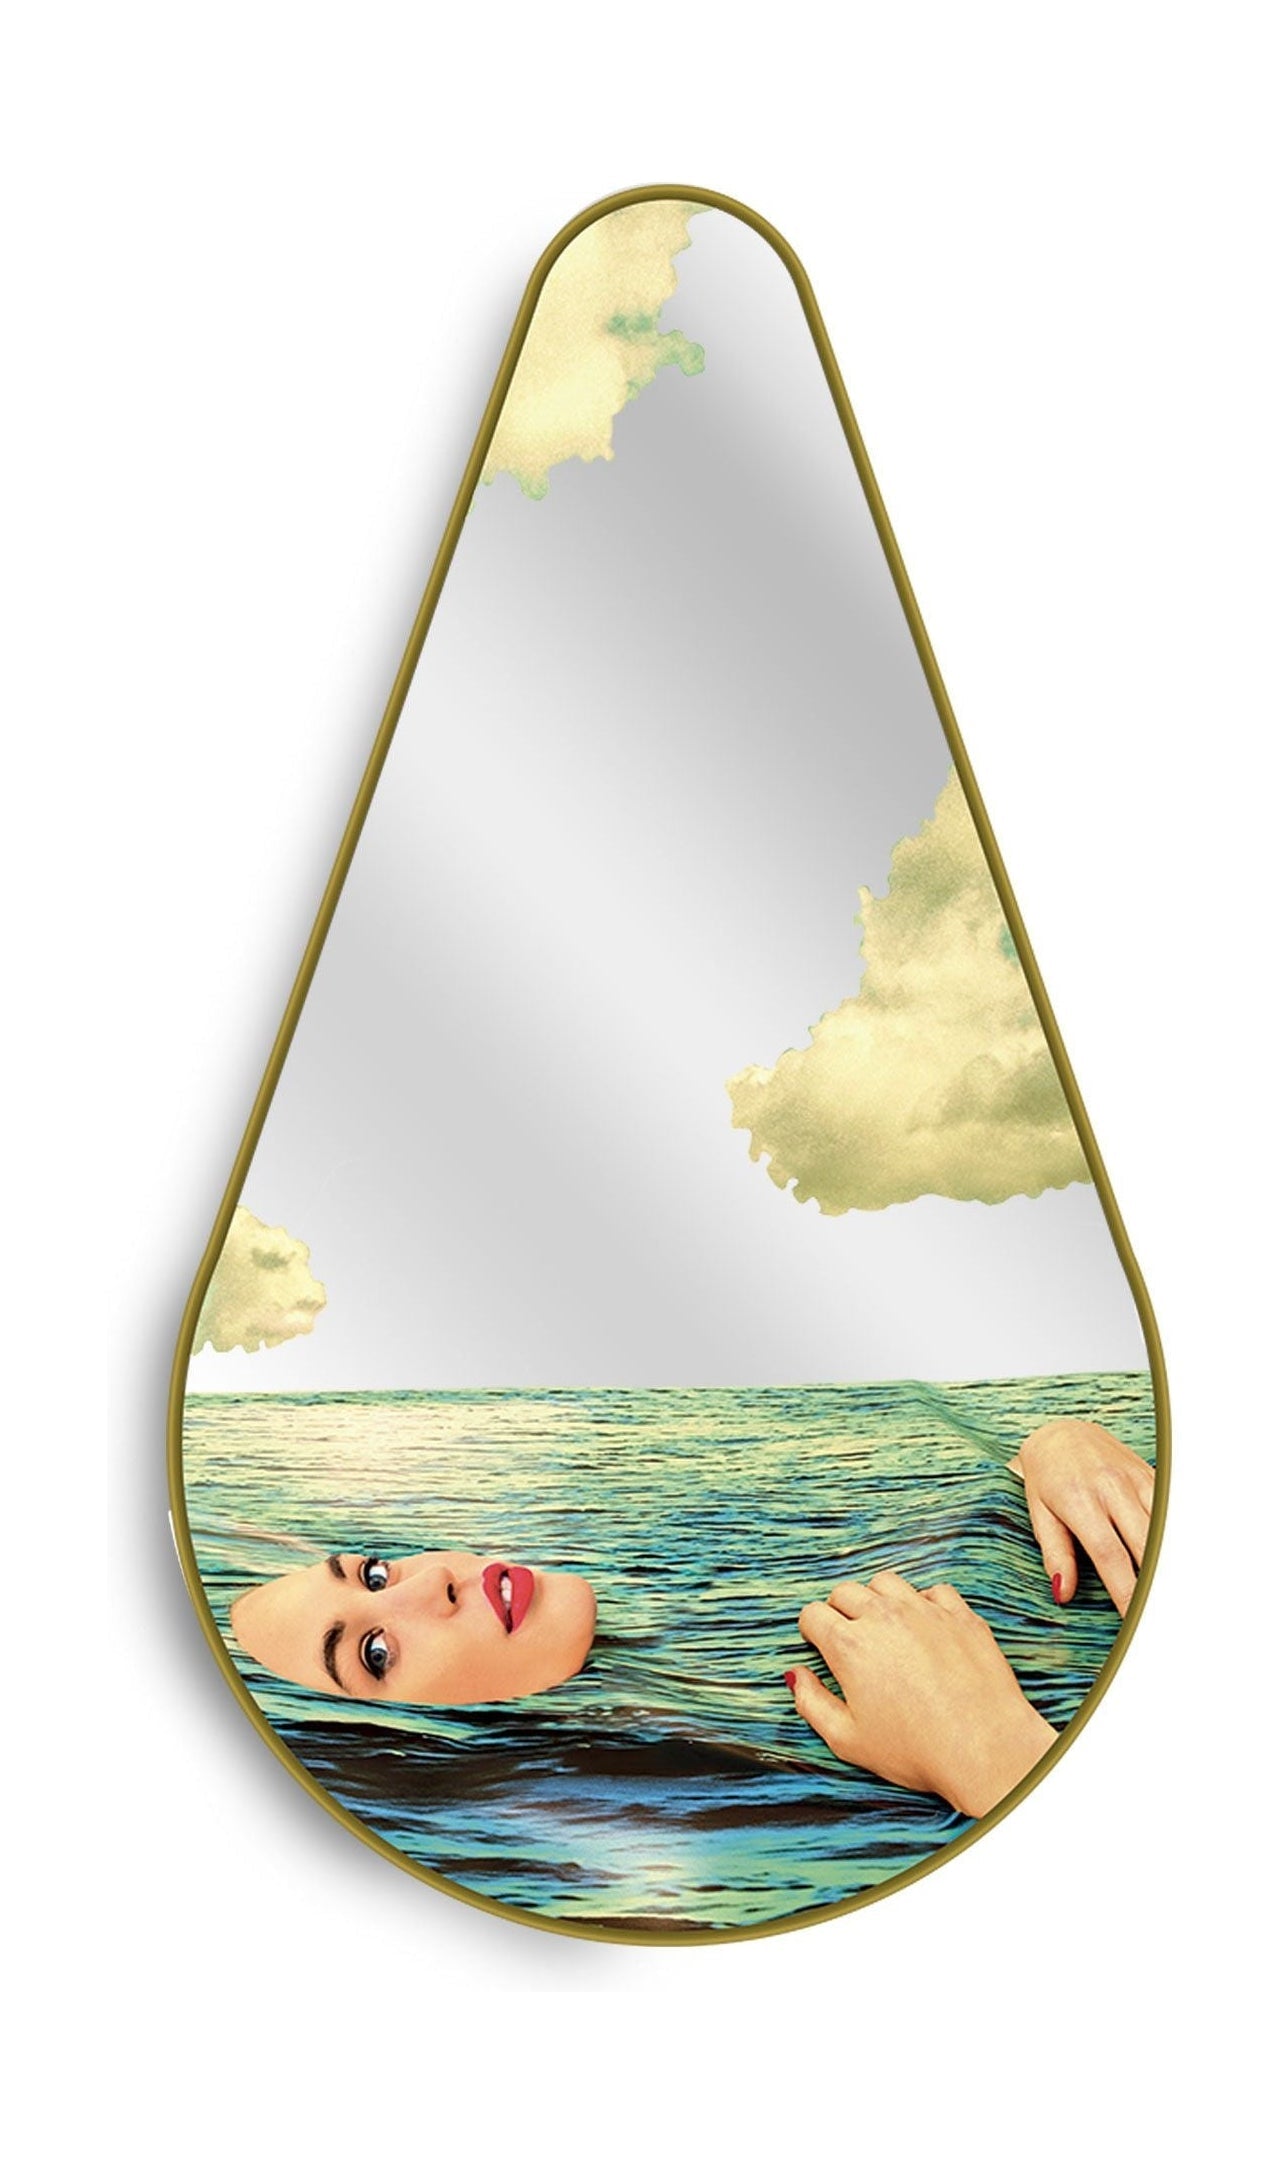 SELETTI I Logror Mirror Gold Frame Pear, Seagirl